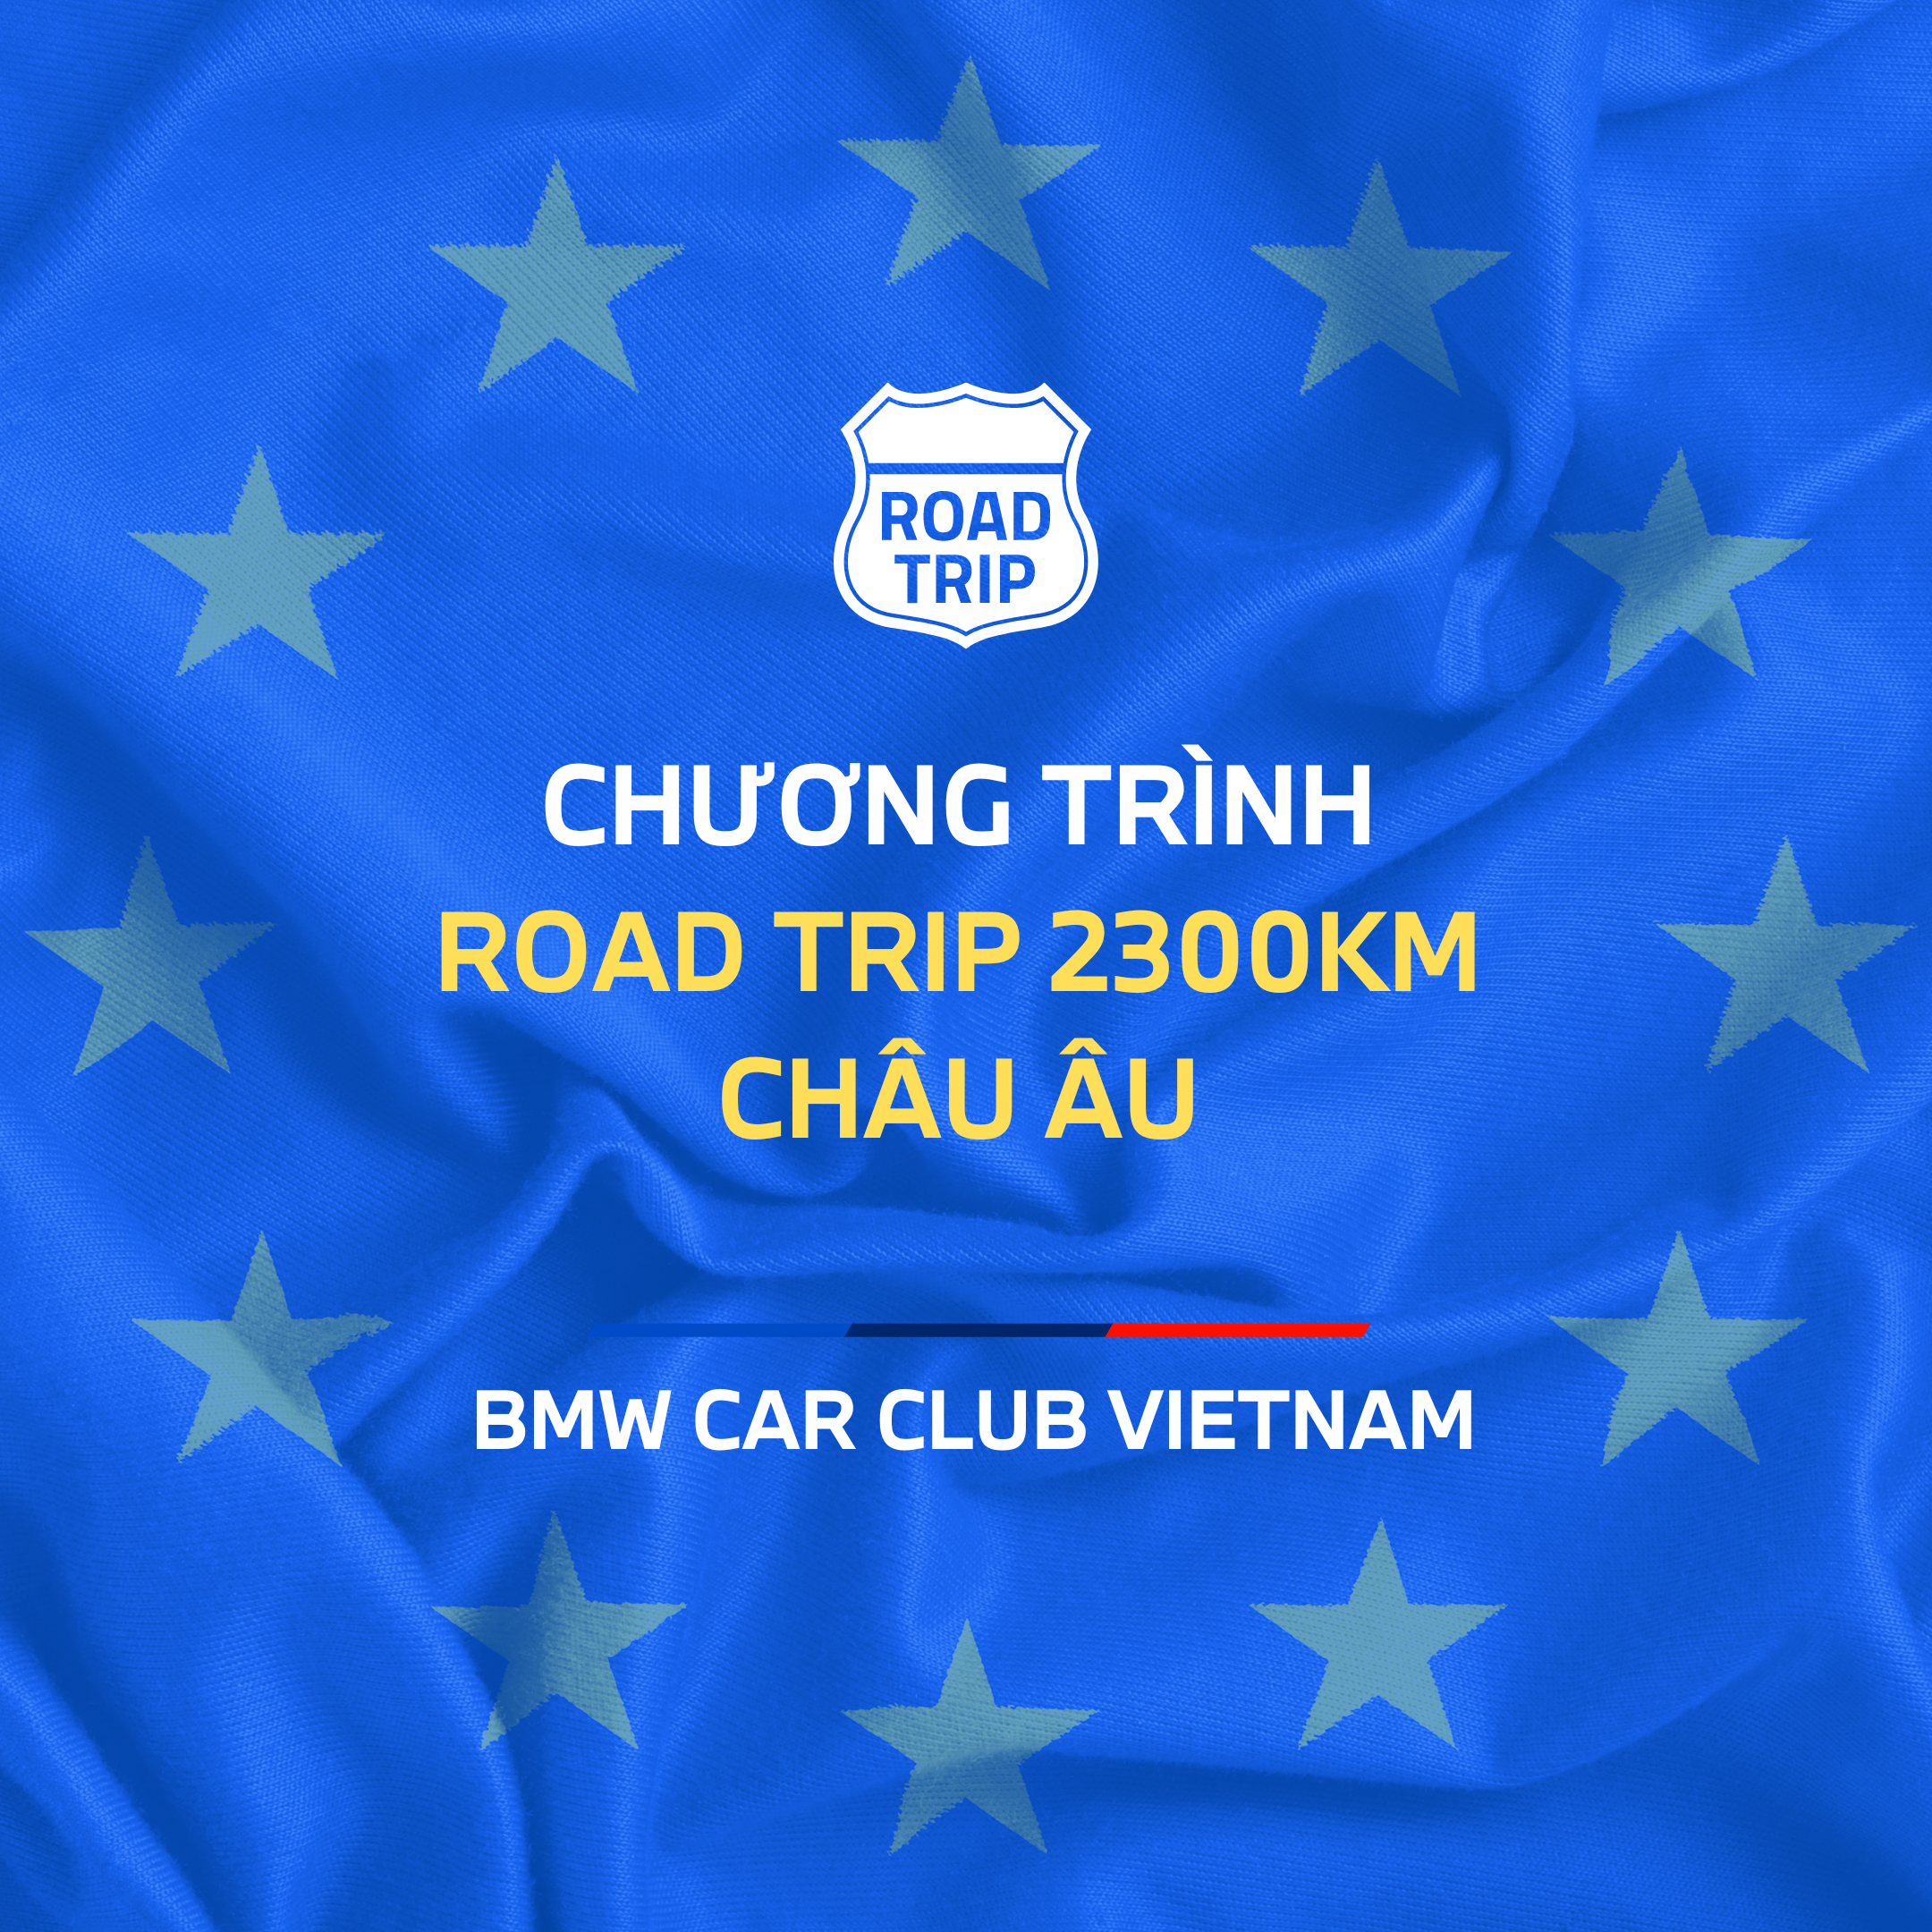 Thông báo về chương trình "Road Trip Châu Âu 2023" của BMW Car Club Vietnam